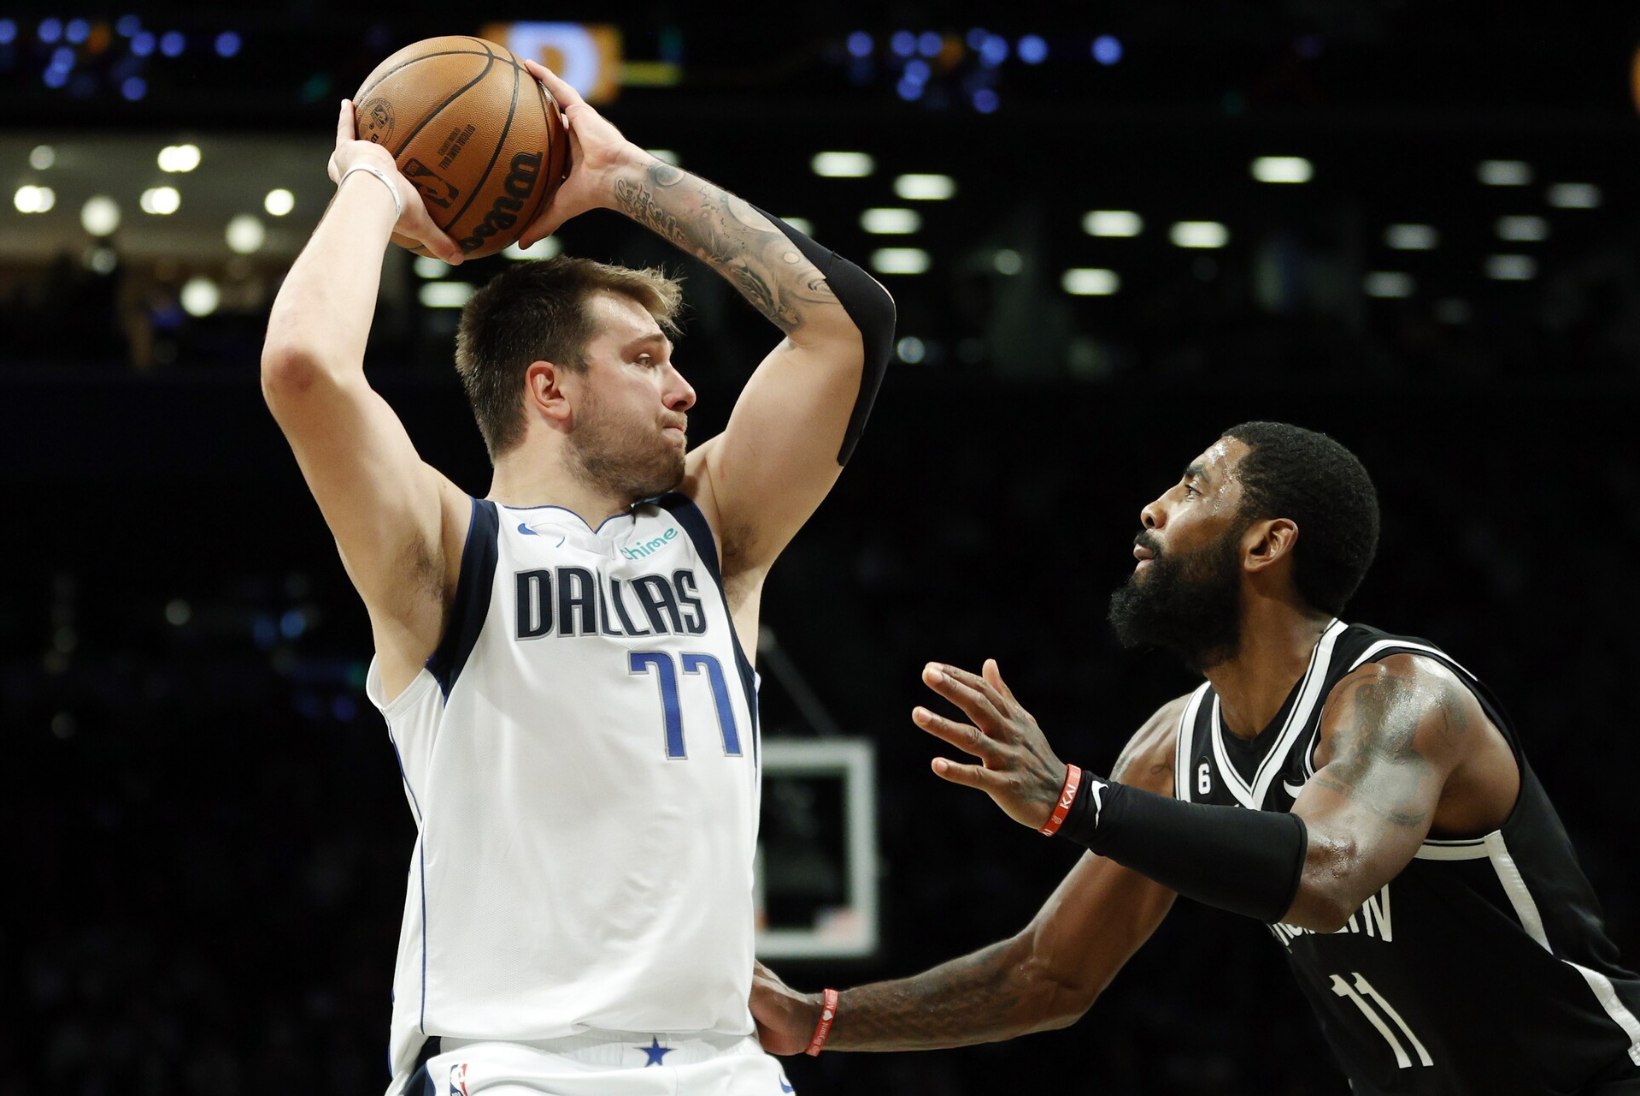 Kas Irving ja Dončić veavad Dallase NBA meistriks? Eesti ekspert julgeb selles kahelda